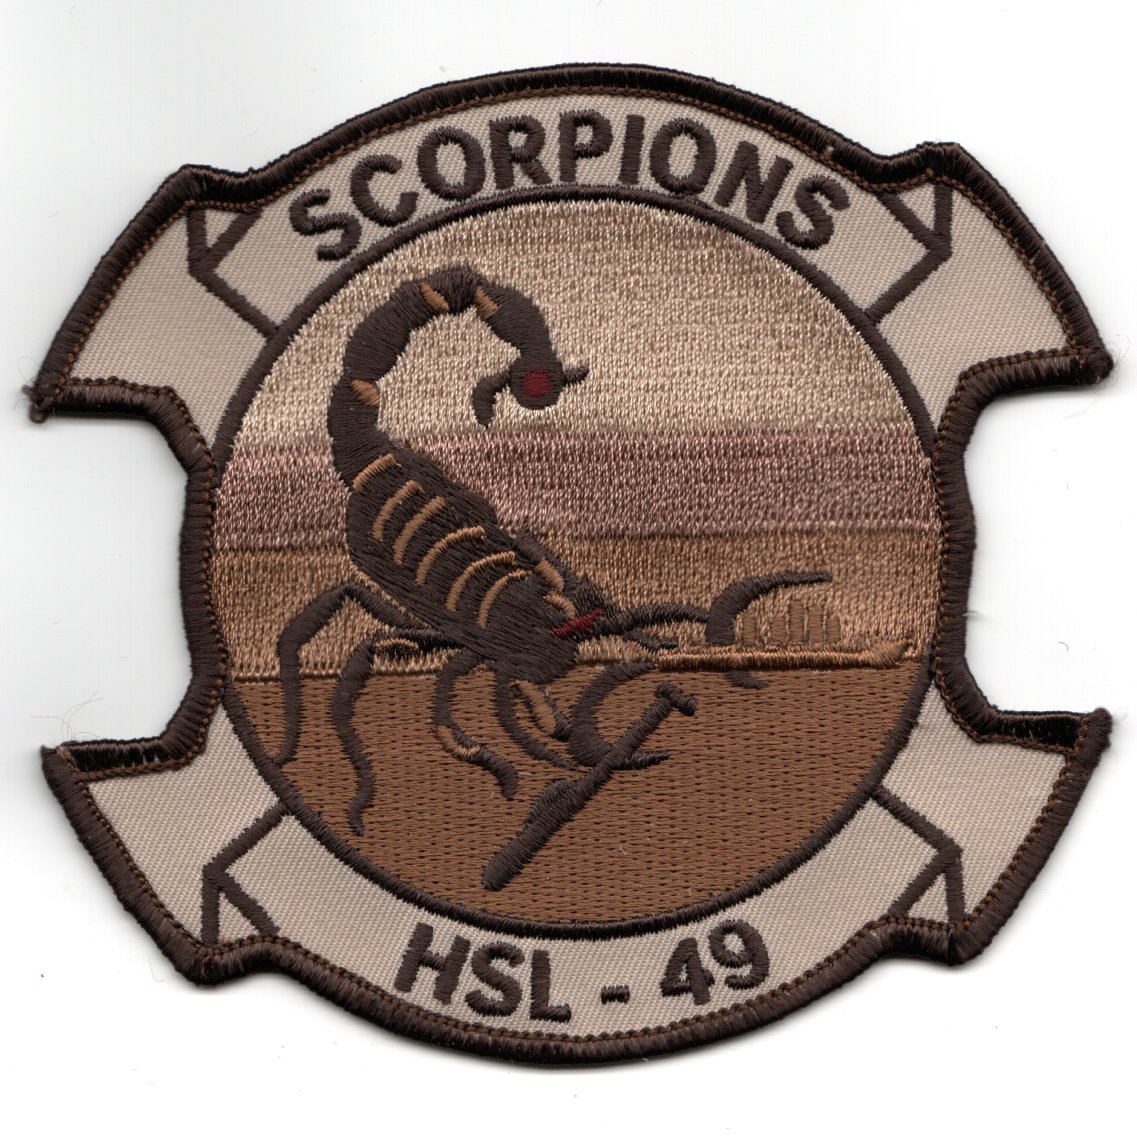 HSL-49 Squadron Patch (Desert)